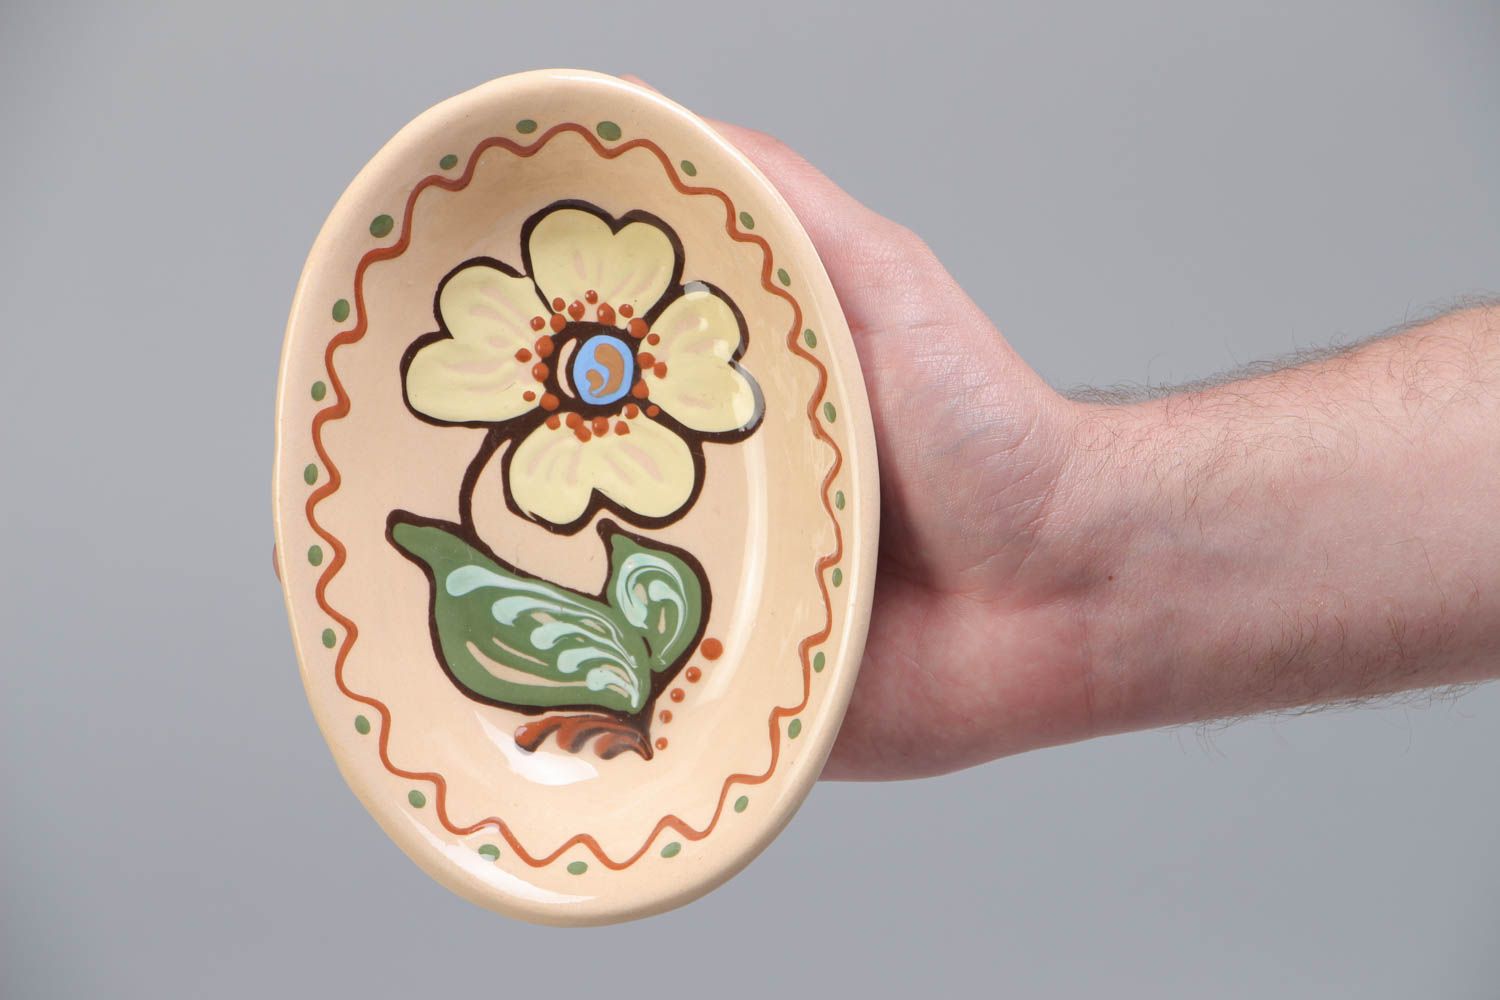 Assiette creuse ovale en terre cuite avec fleur peinte originale faite main photo 5